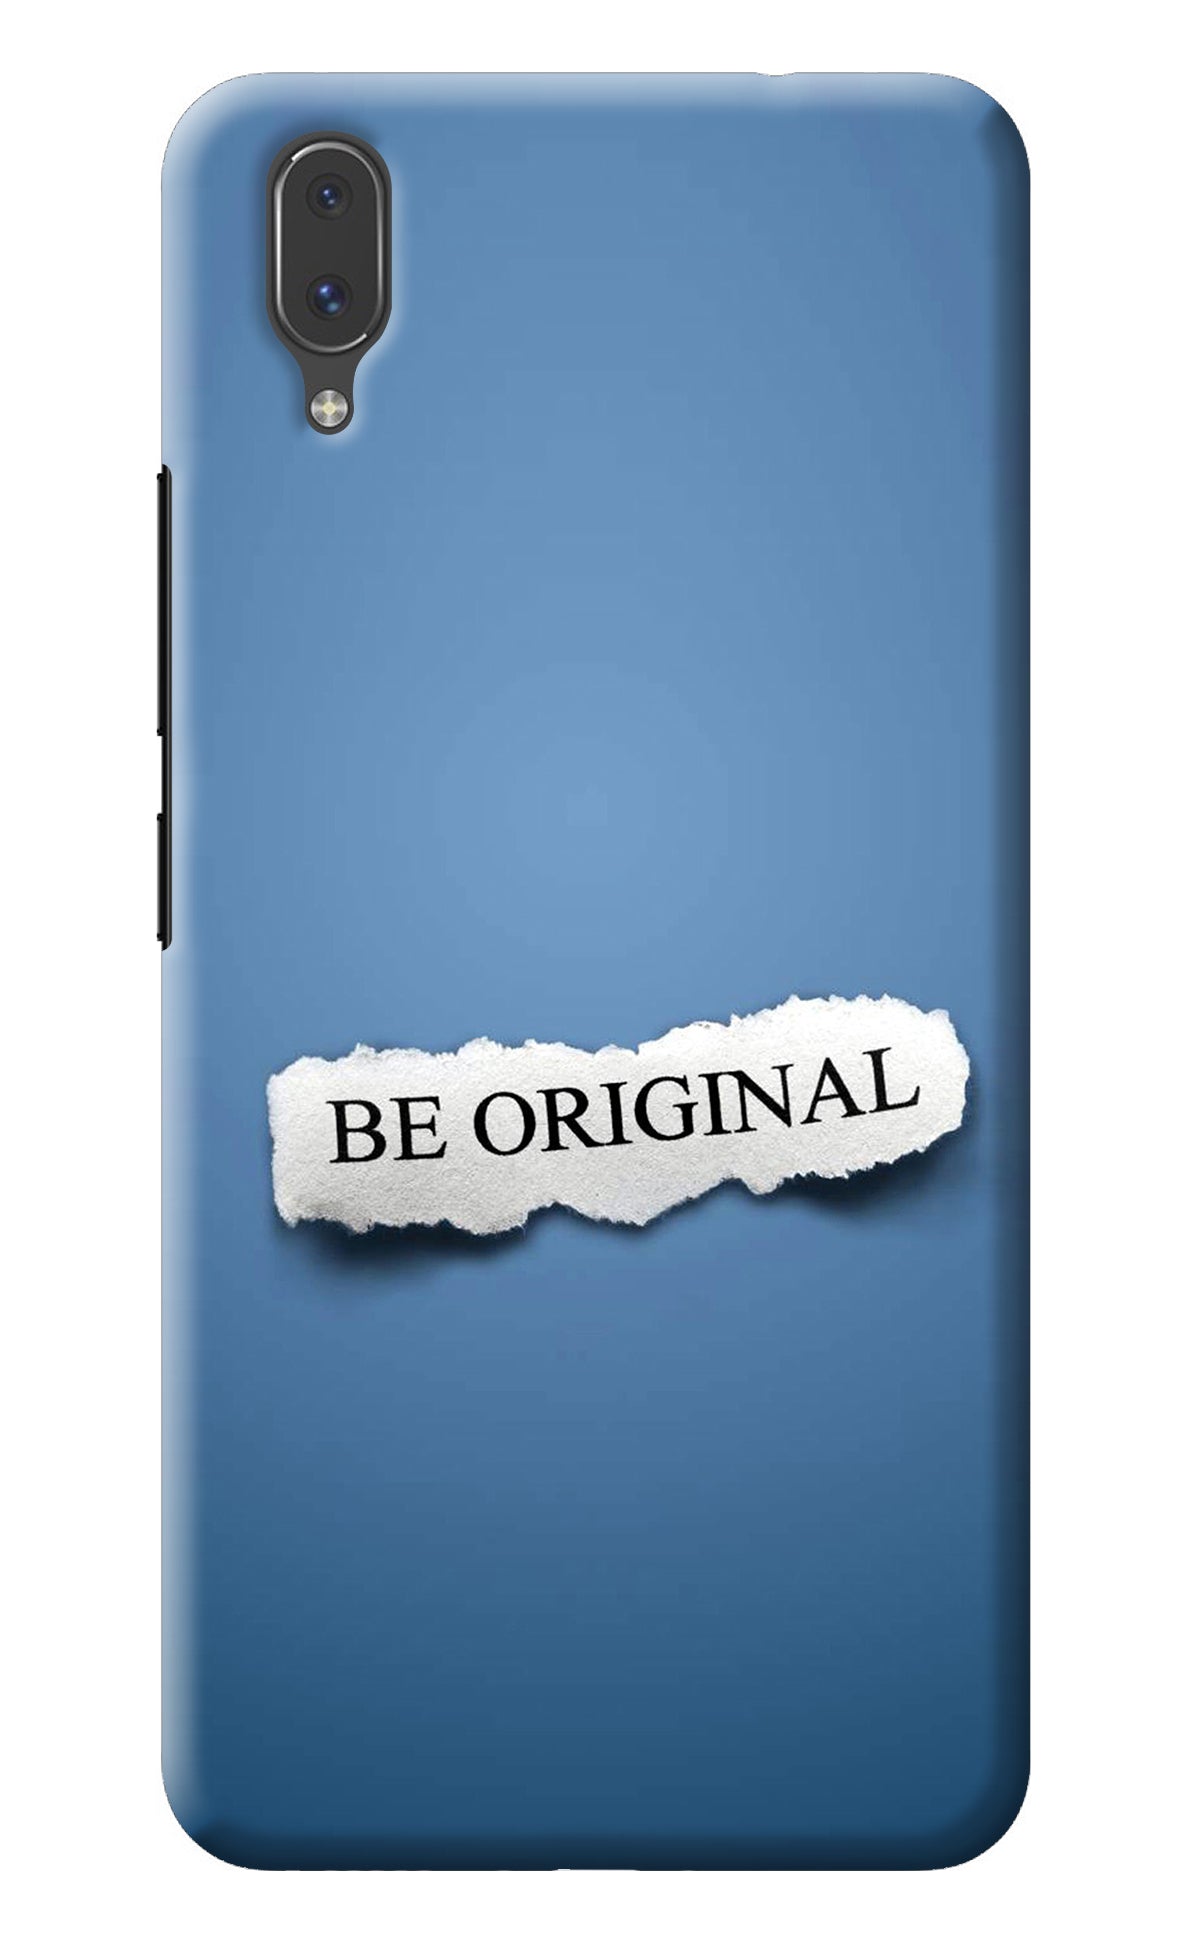 Be Original Vivo X21 Back Cover